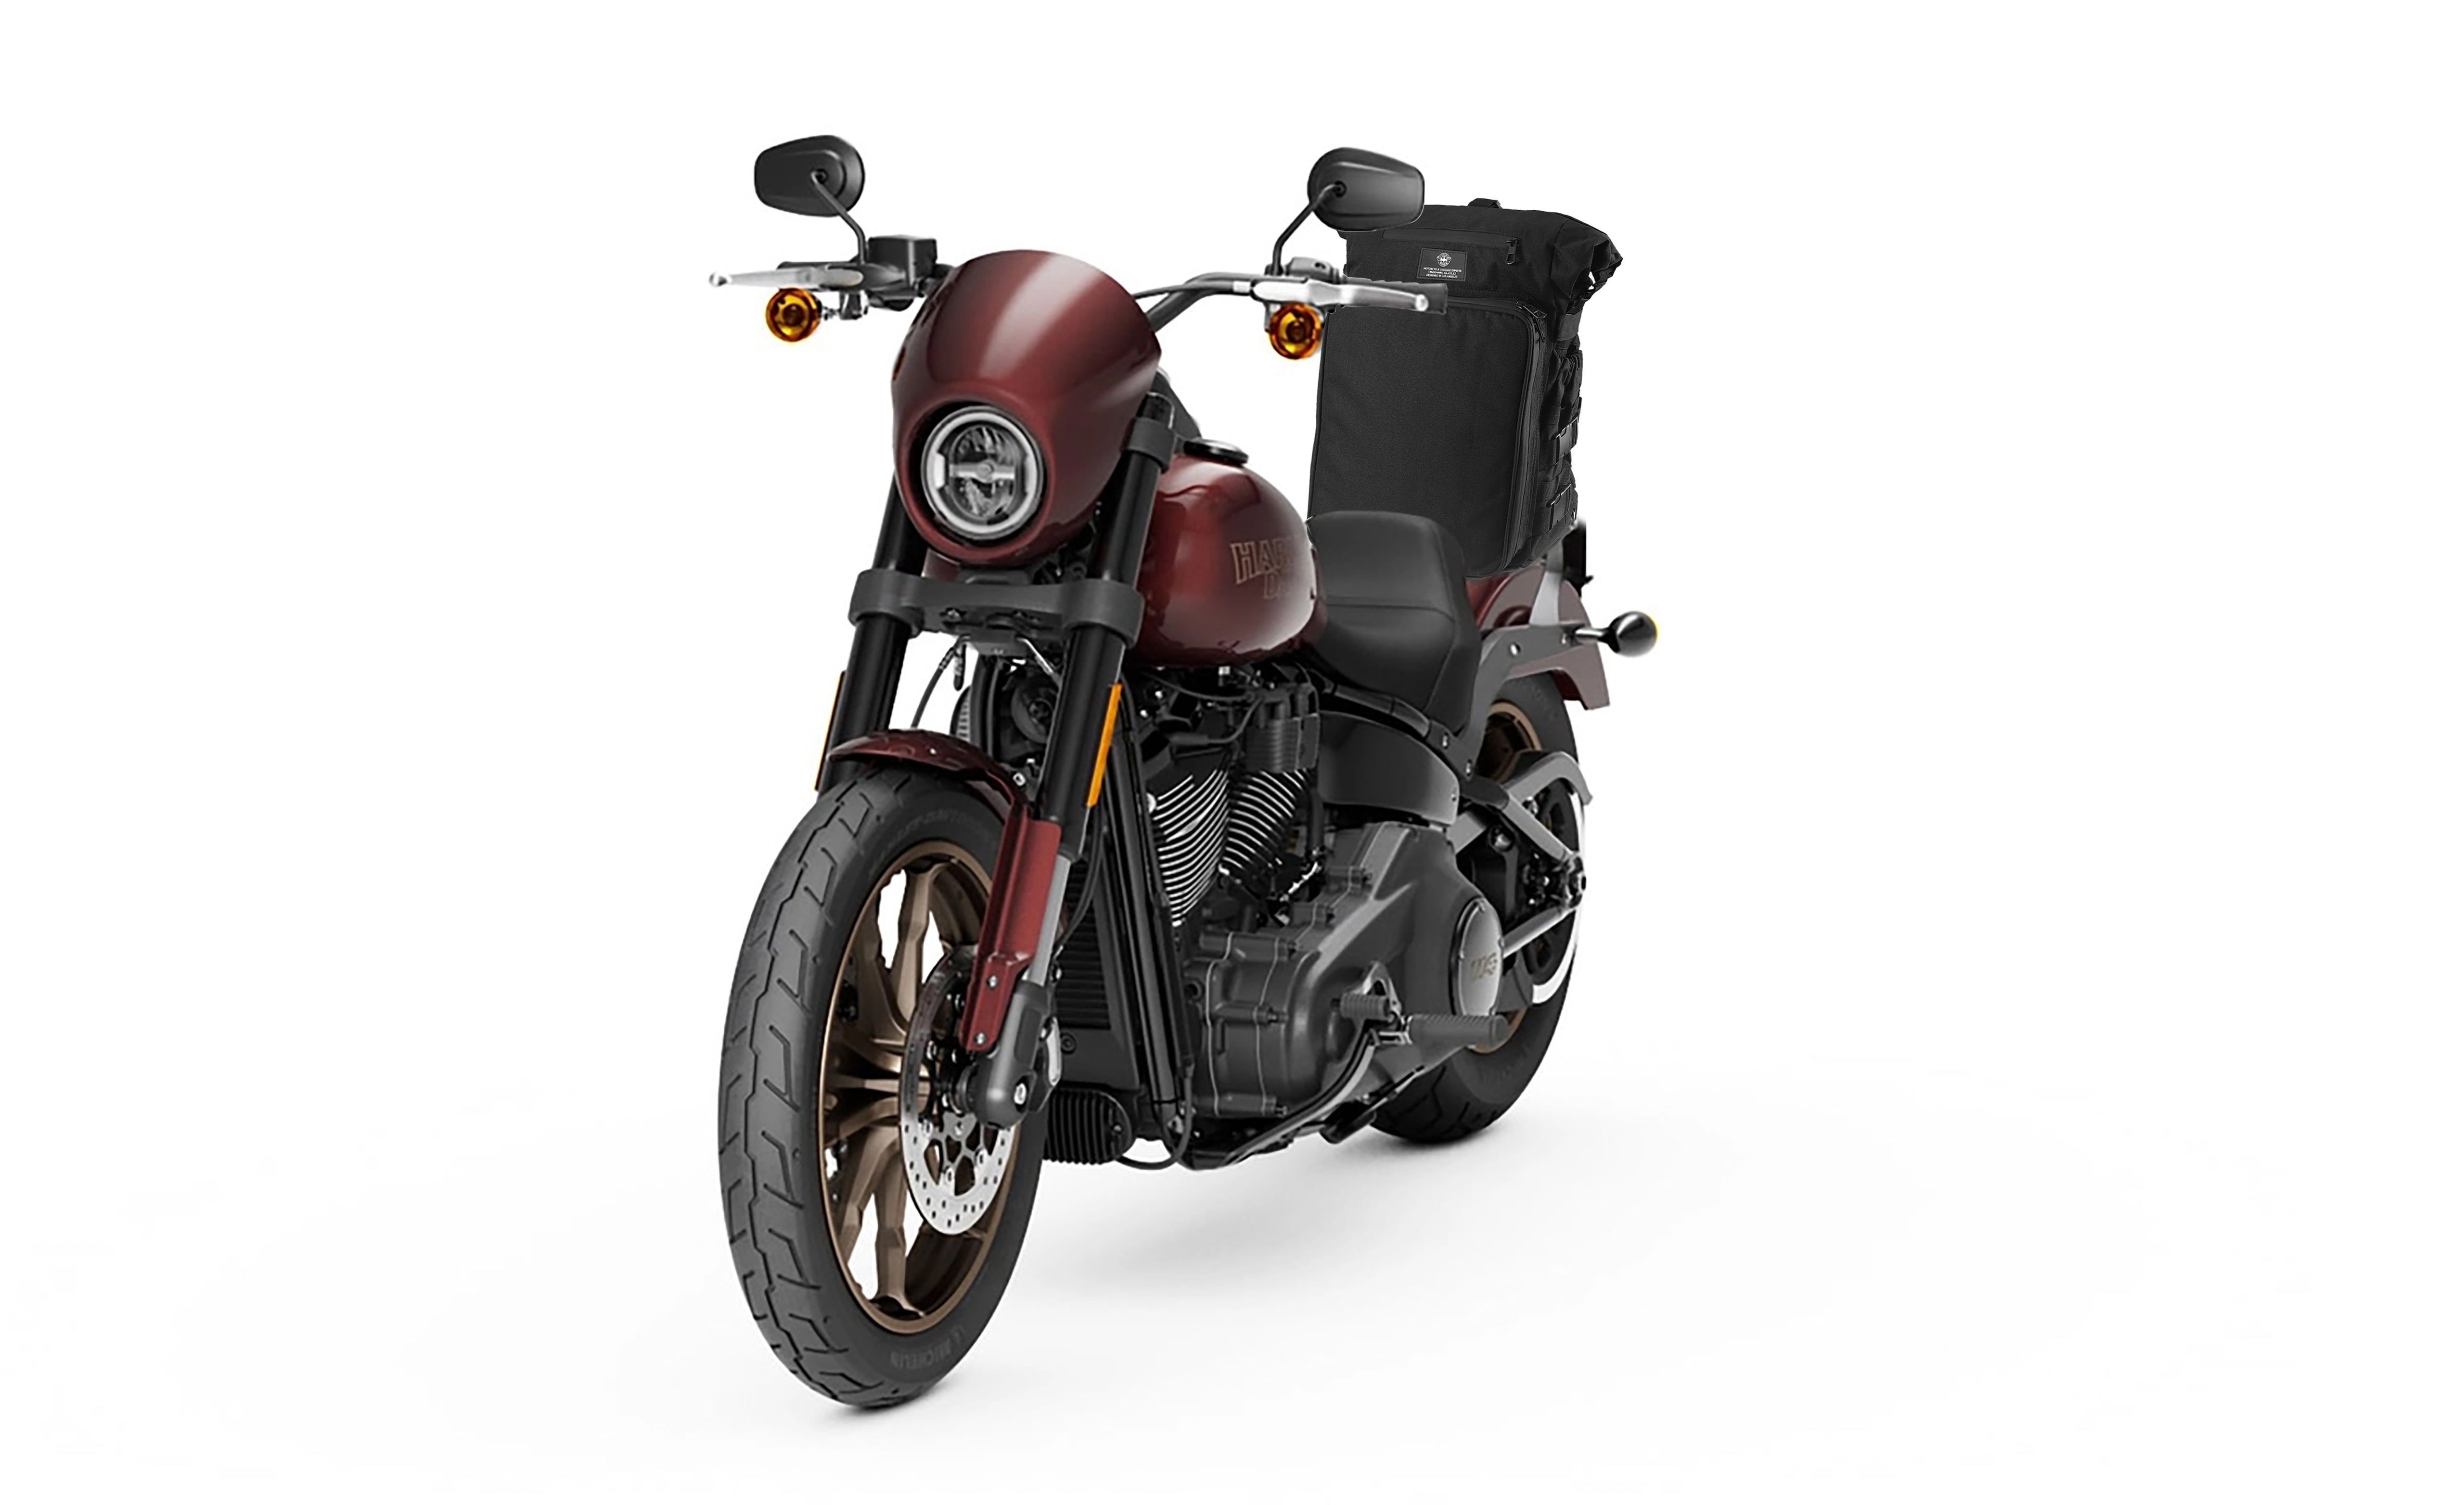 Viking Renegade XL Kawasaki Motorcycle Tail Bag Bag on Bike View @expand